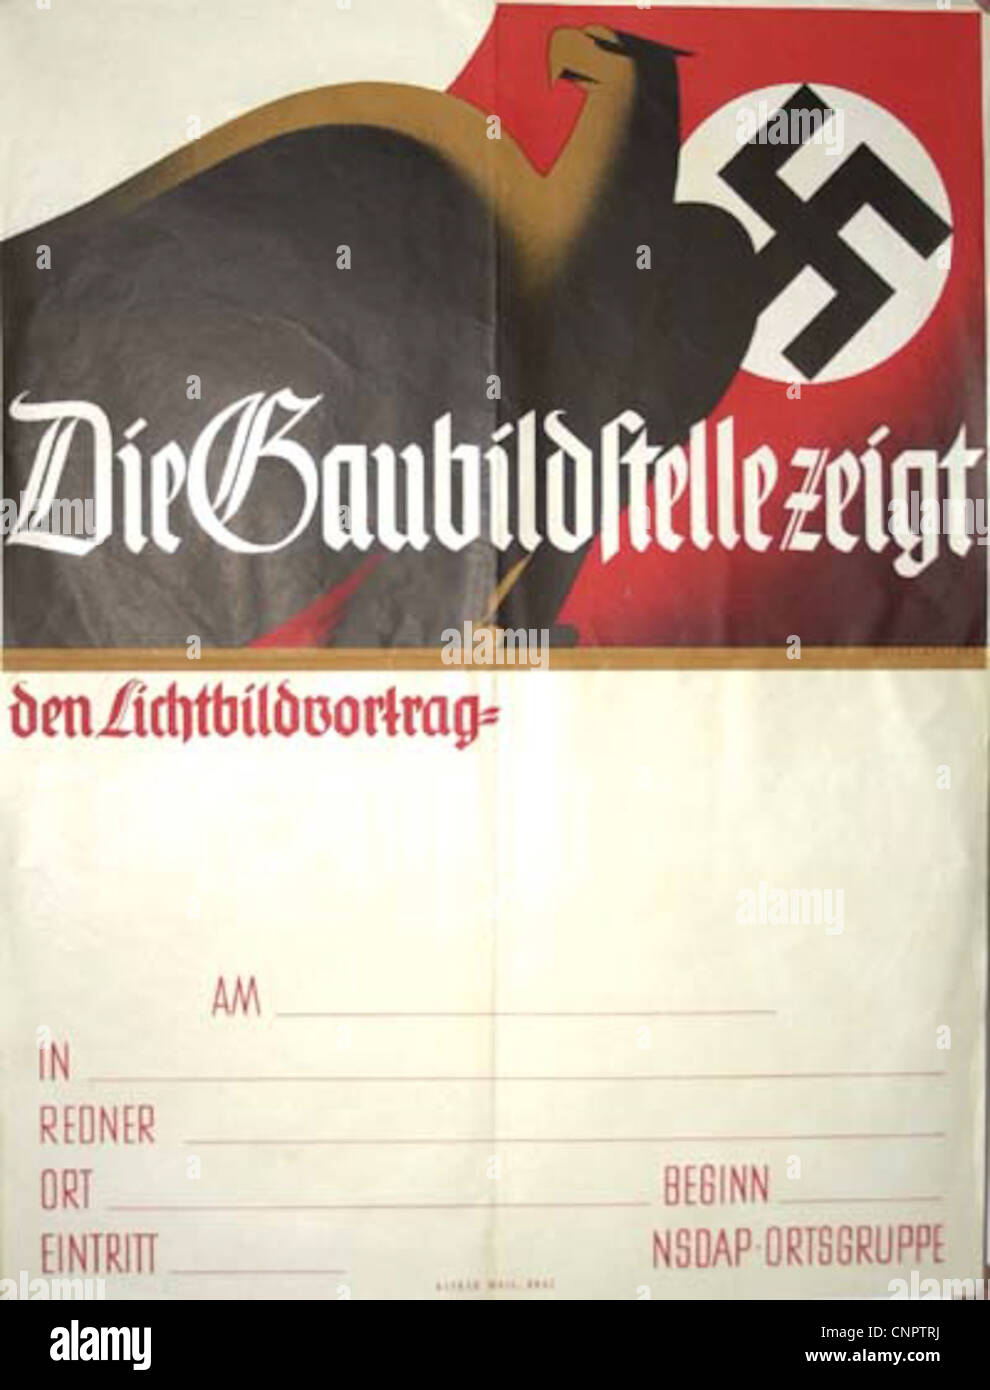 Les Affiches de propagande de la Seconde Guerre mondiale 2 Banque D'Images